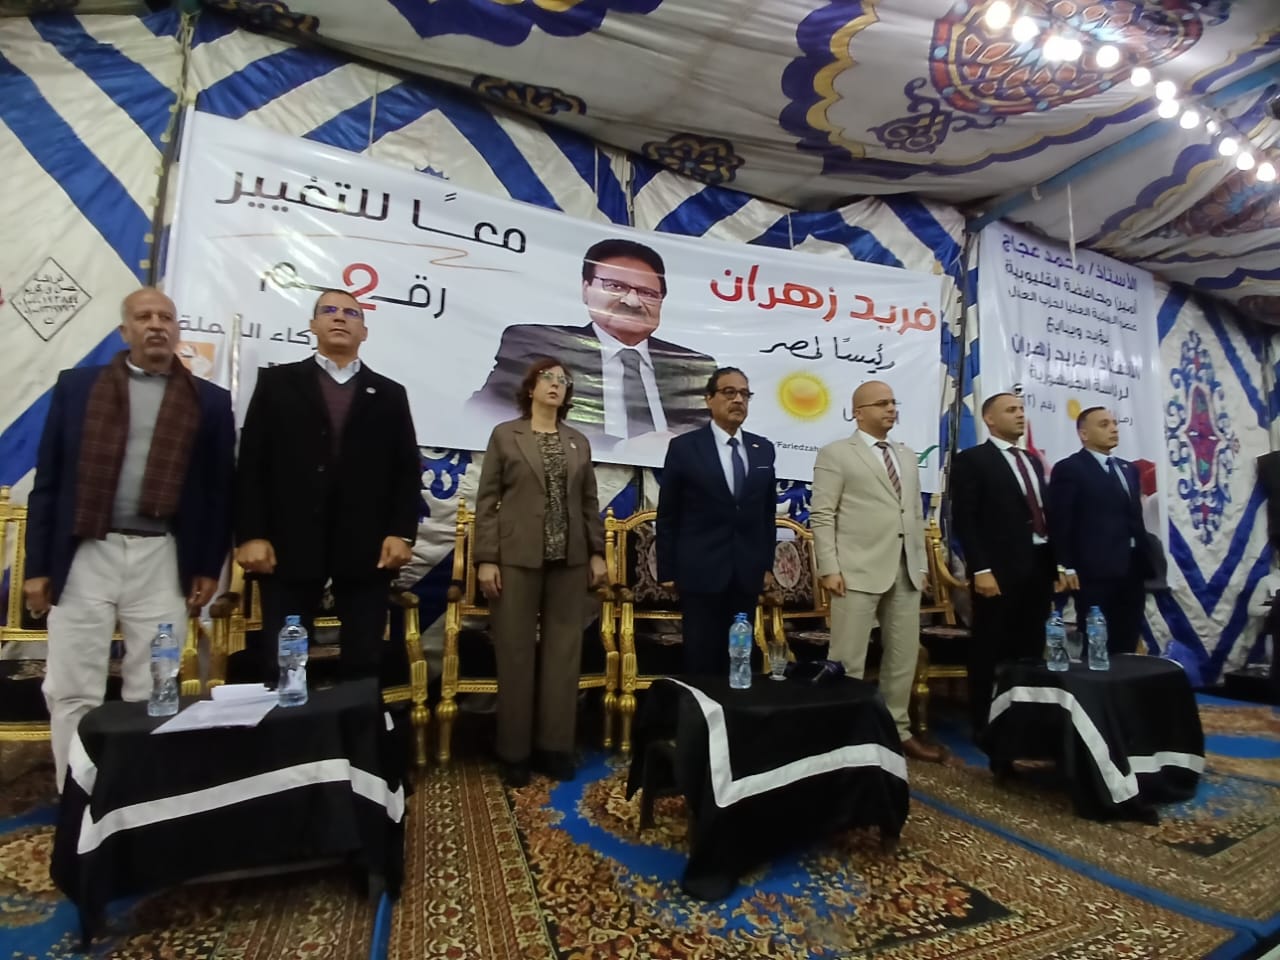 الحملة الرسمية للمرشح الرئاسي فريد زهران تنظم مؤتمرًا جماهيريًا بالقليوبية| صور 